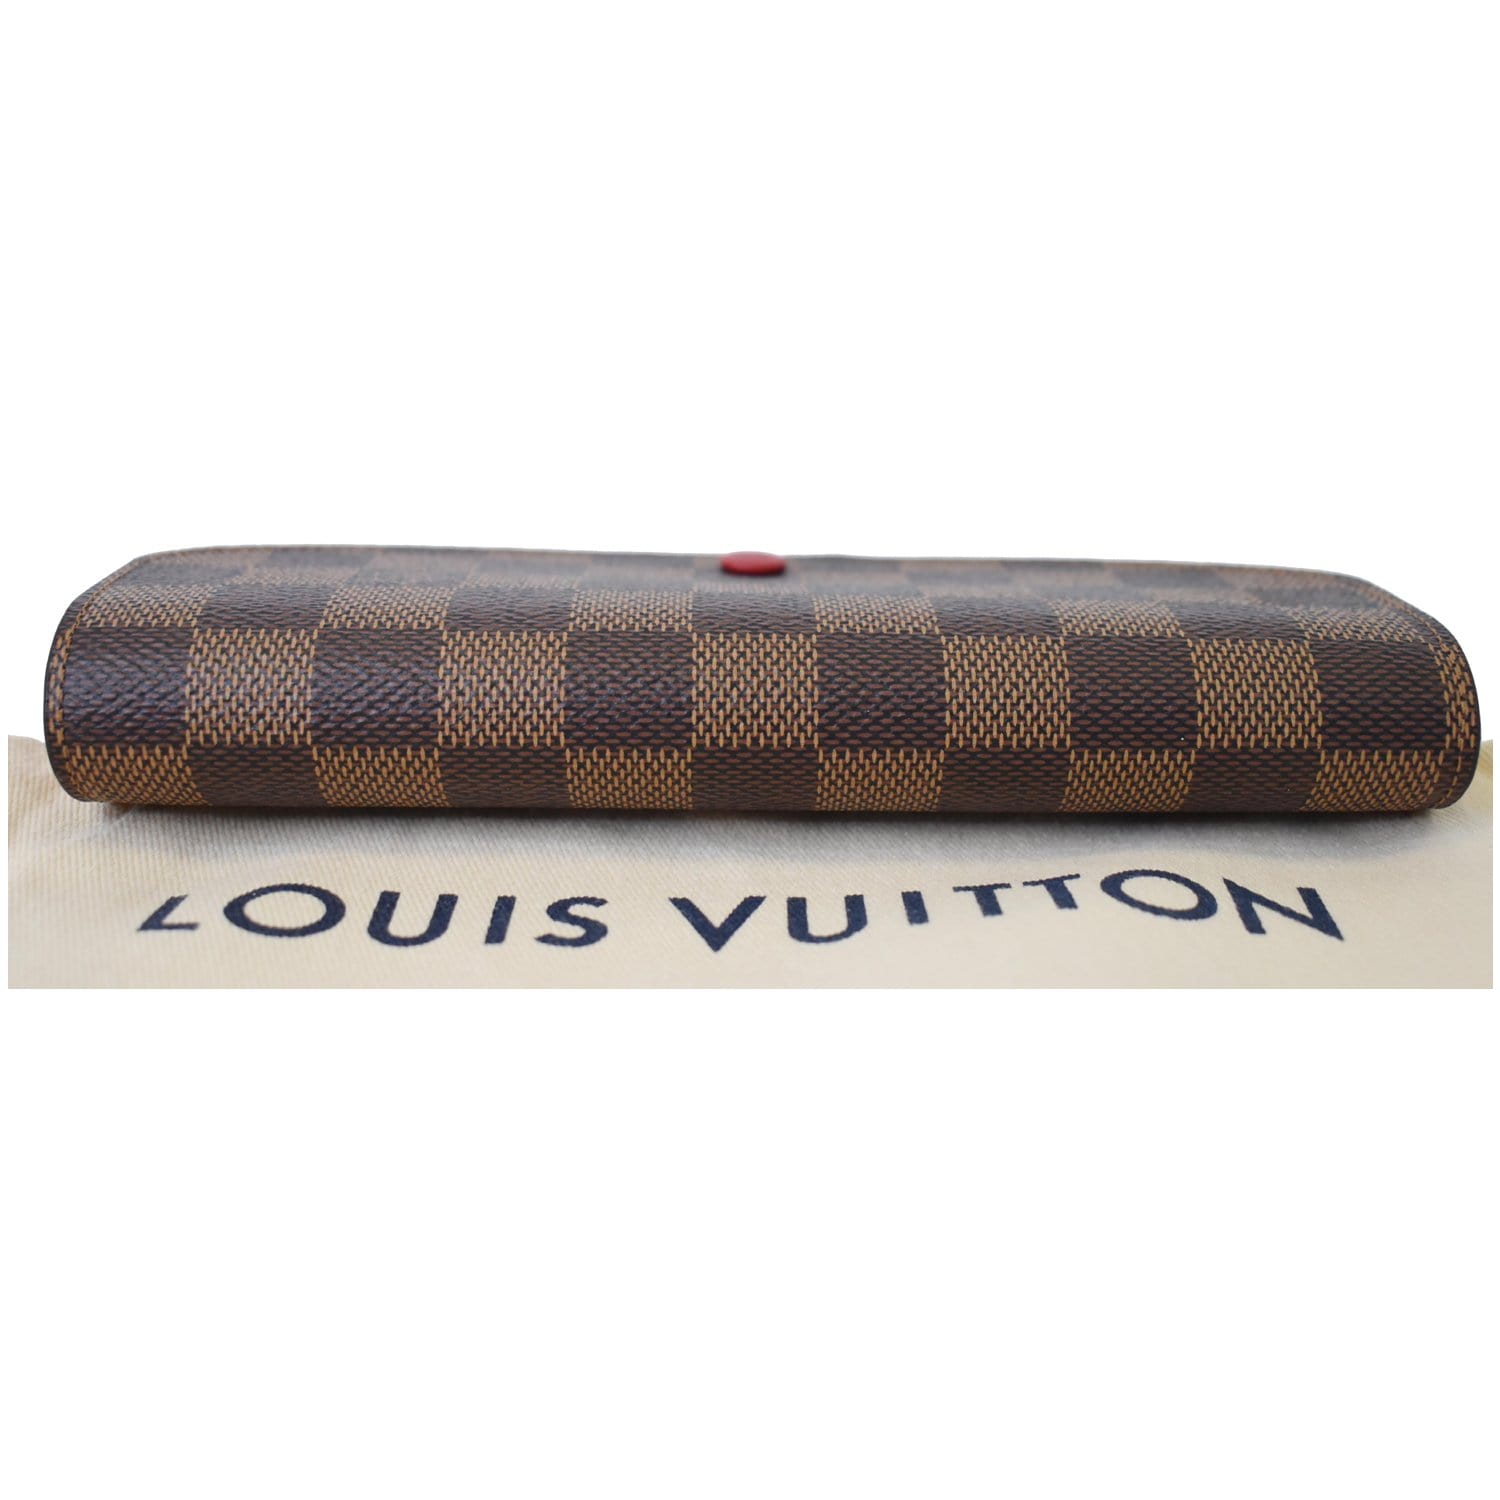 Authenticated Used Louis Vuitton Long Wallet Portefeuille Sarah Brown Damier  Ebene N61734 CA0076 LOUIS VUITTON Flap Women's LV Men's 